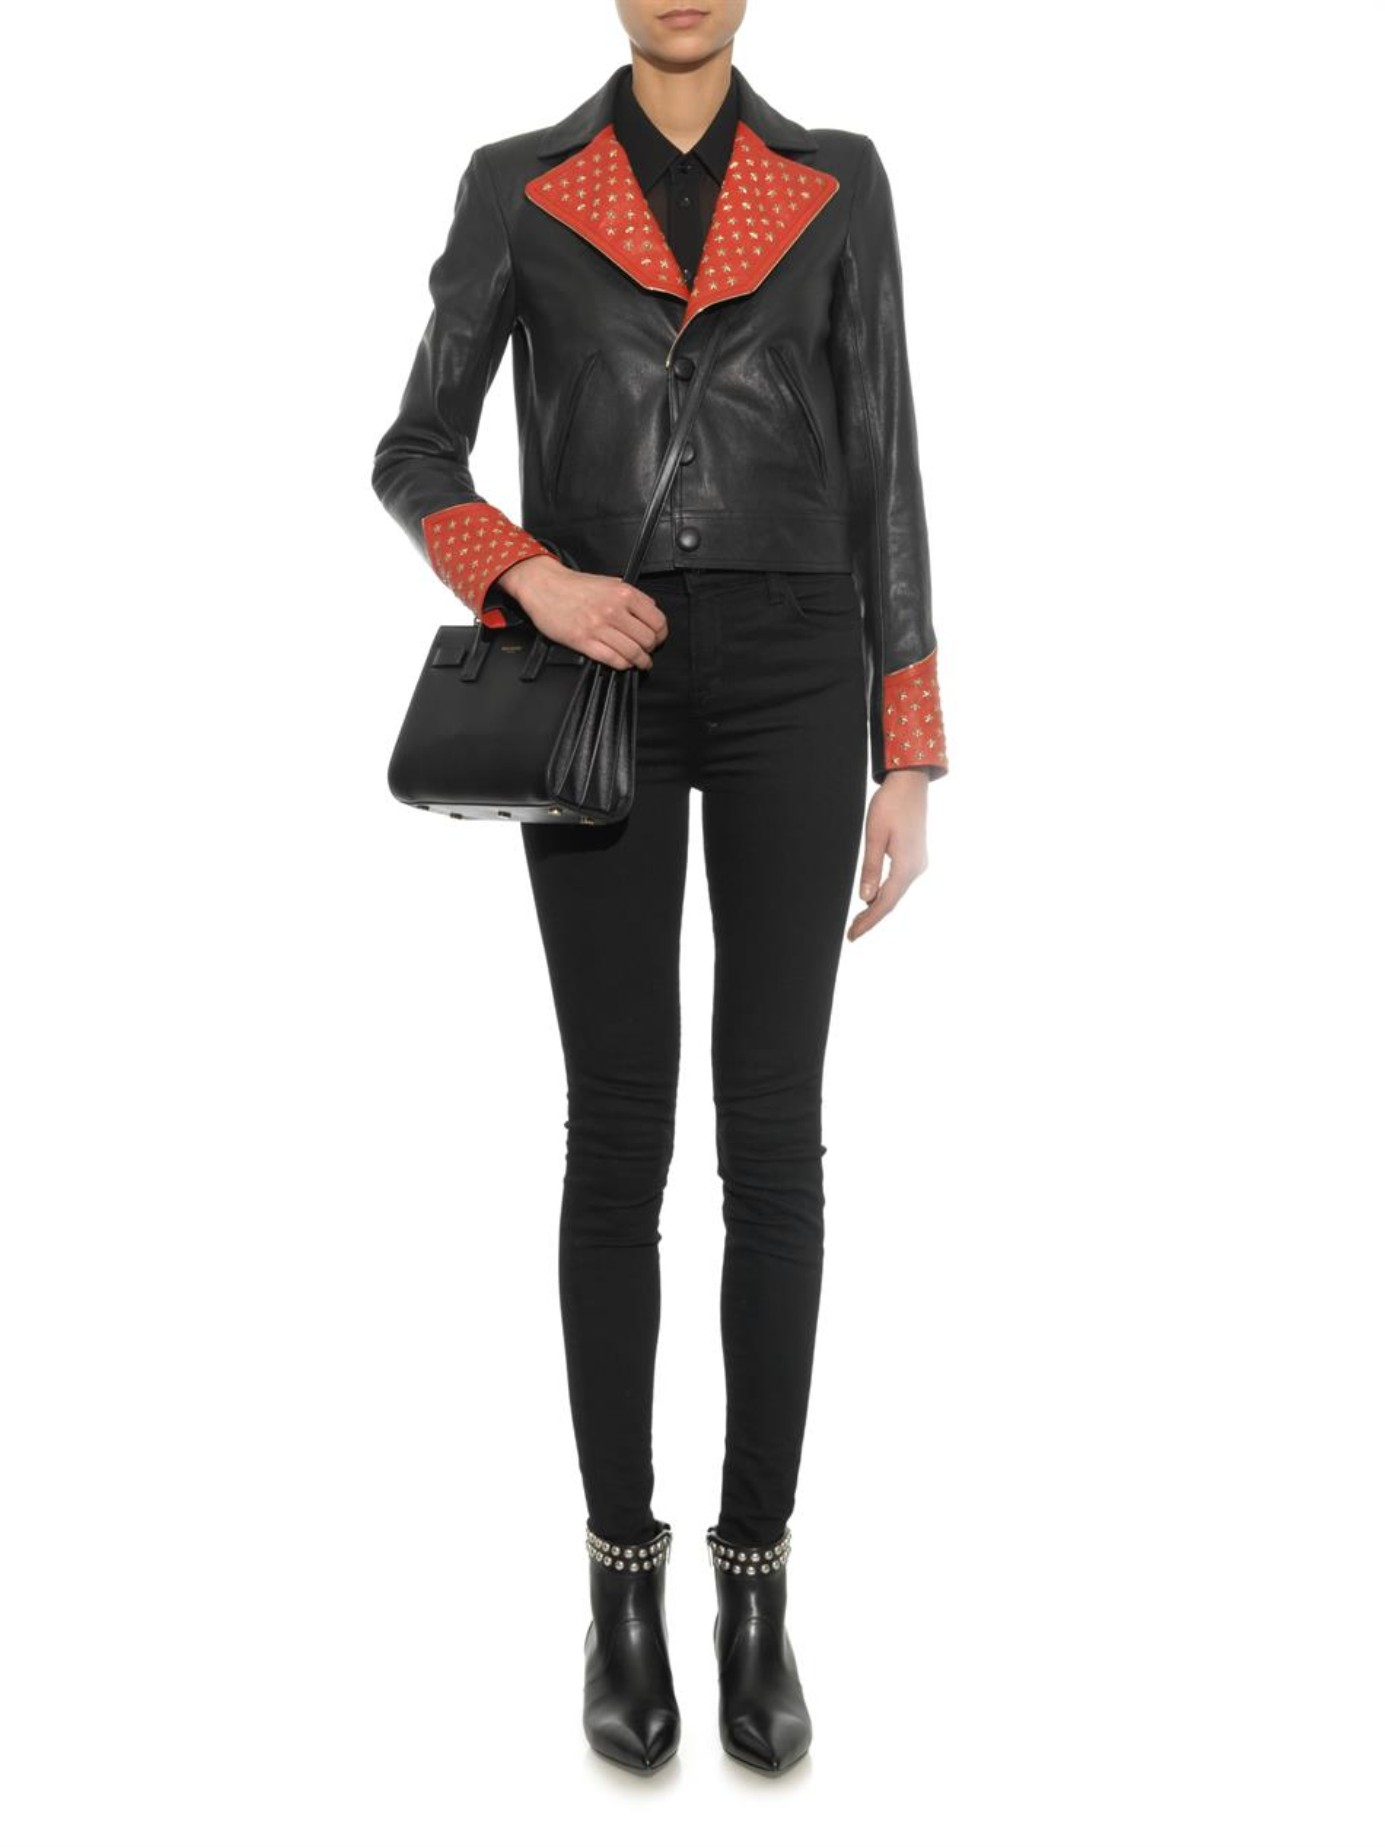 Saint Laurent Embellished Leather Jacket in Black - Lyst